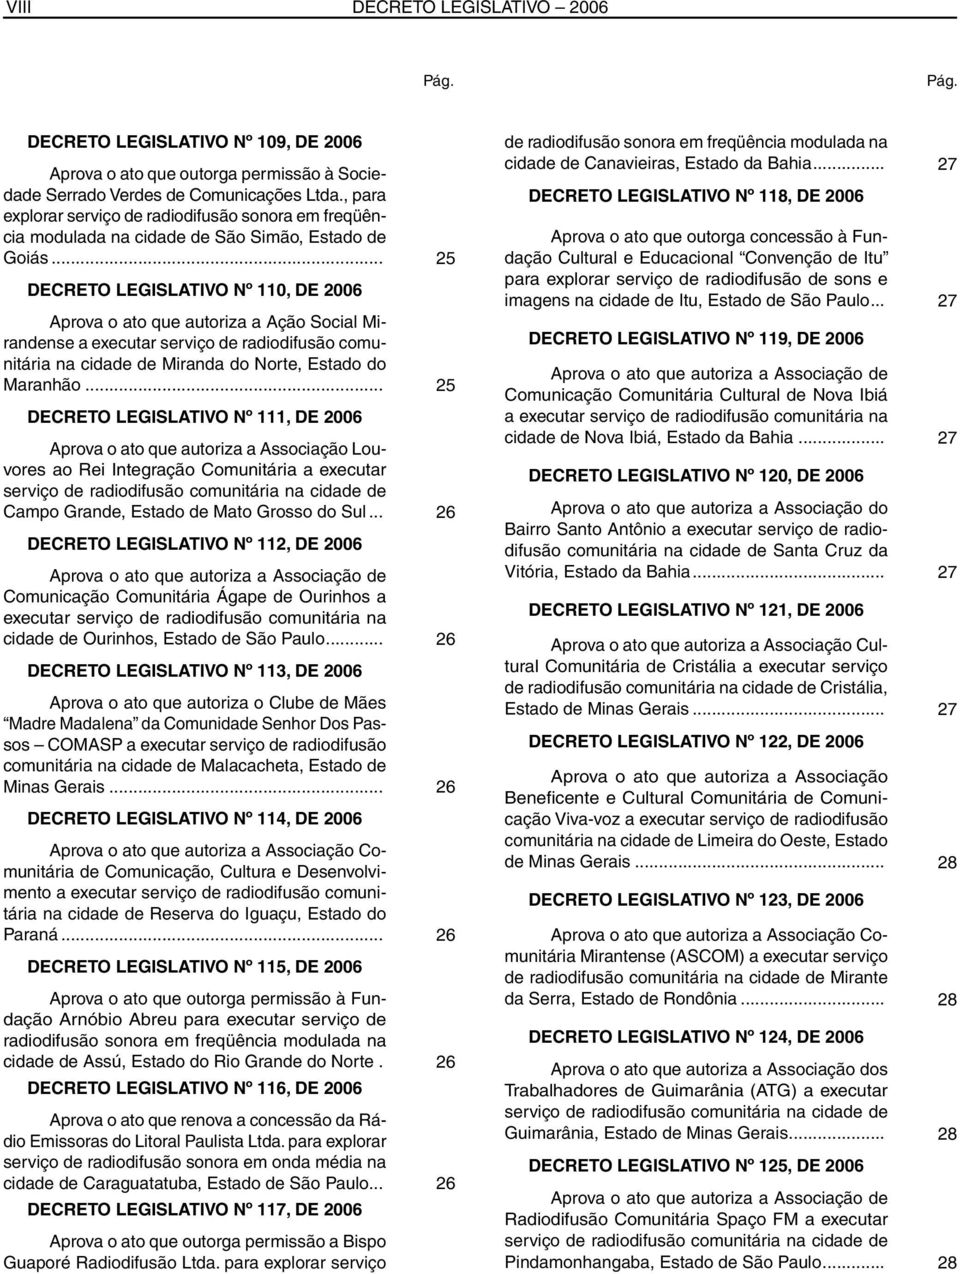 .. 25 DECRETO LEGISLATIVO Nº 110, DE 2006 Aprova o ato que autoriza a Ação Social Mirandense a executar serviço de radiodifusão comunitária na cidade de Miranda do Norte, Estado do Maranhão.